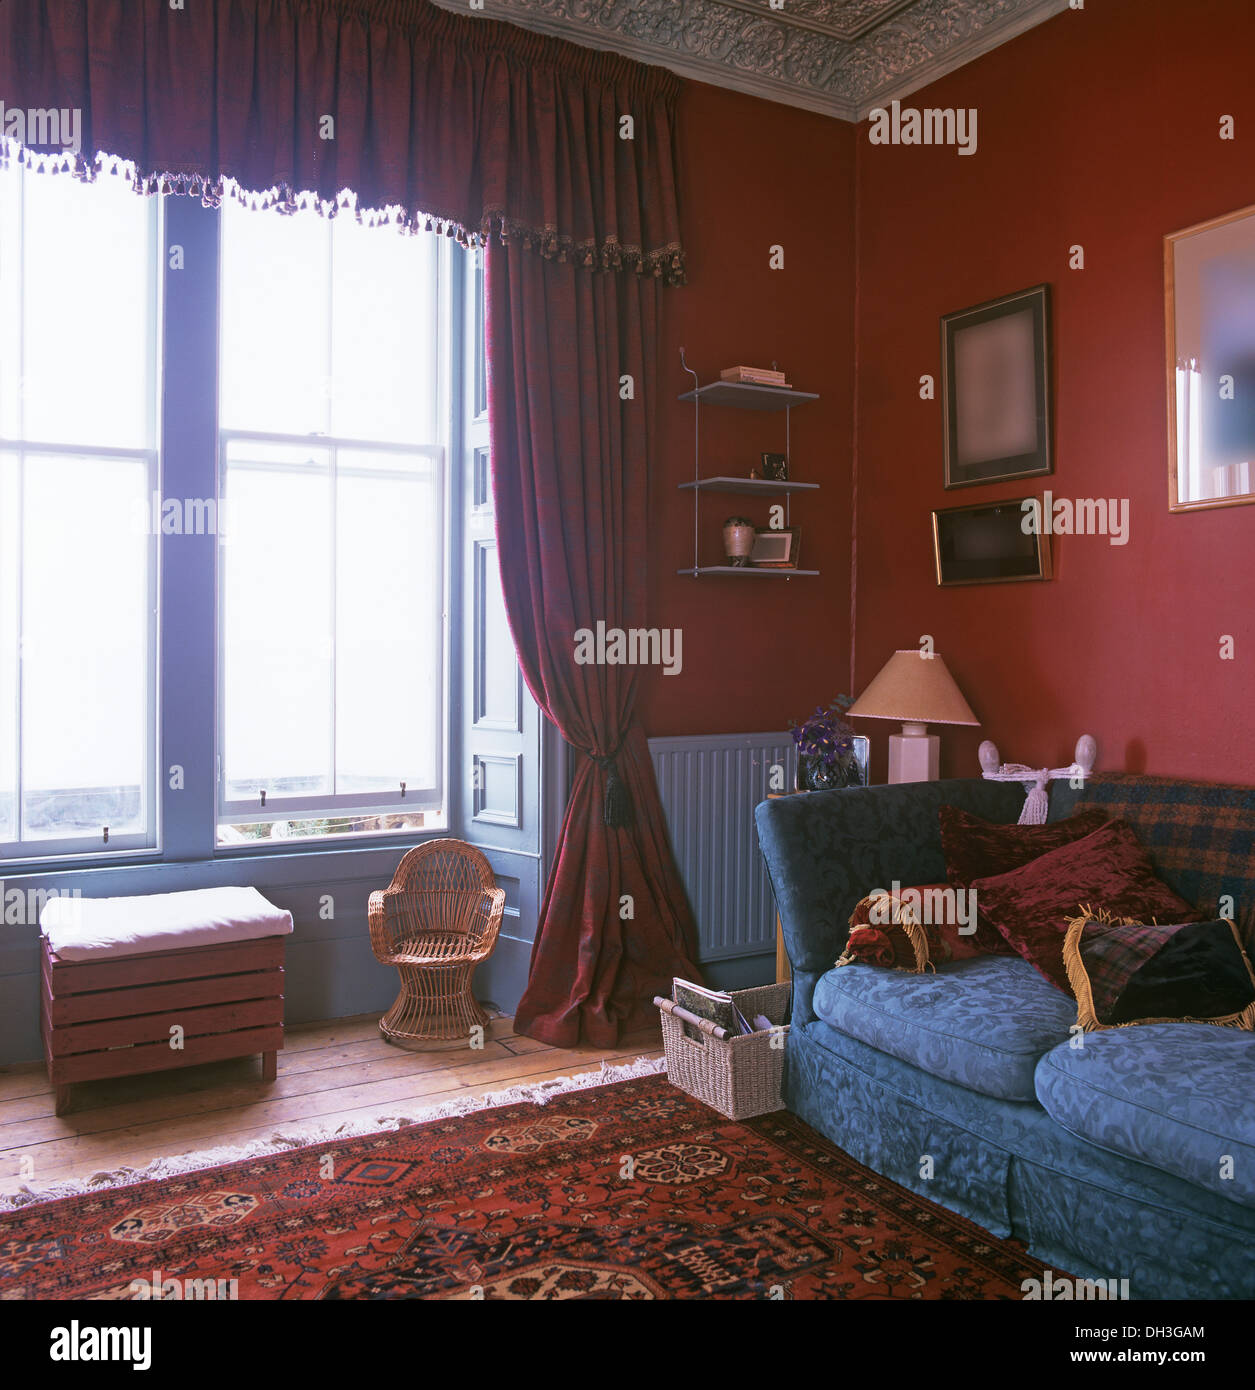 Roten Damast Gardinen und Pelmet am Fenster im roten Wohnzimmer mit blauem  Sofa und gemusterten Teppich Stockfotografie - Alamy